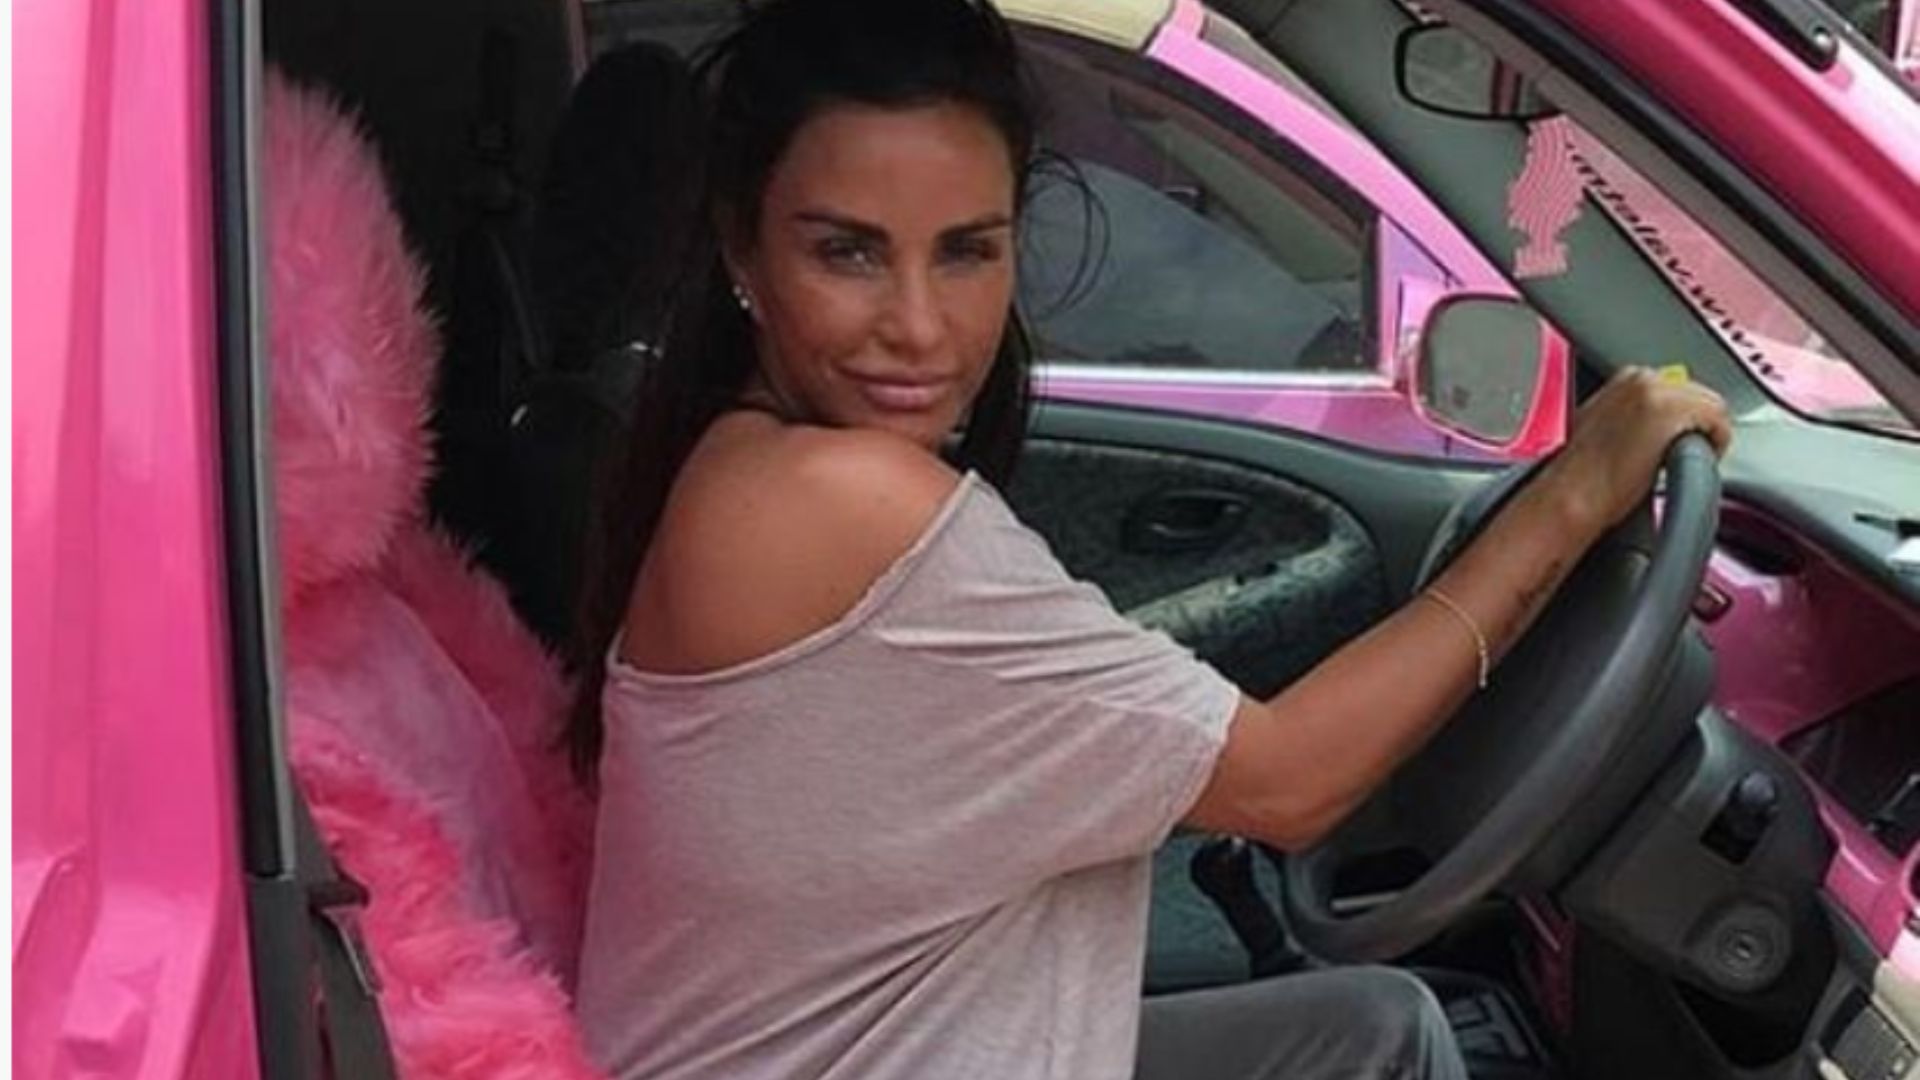 Katie Prices £140k pink Range Rover for drink-drive vomit detention